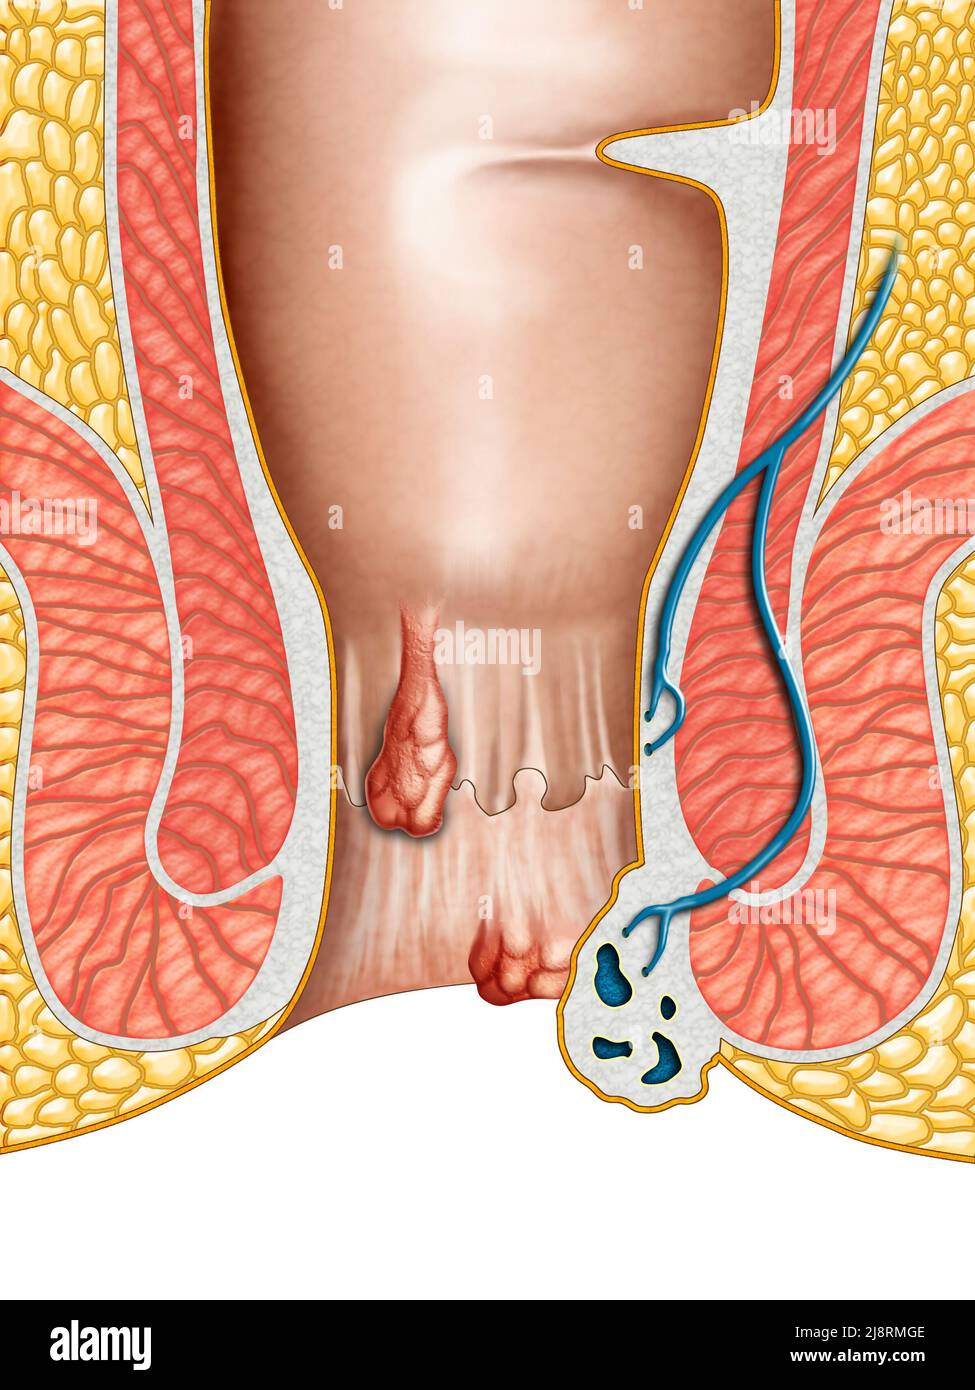 Dibujo anatómico que muestra las hemorroides internas y externas. Ilustración digital. Foto de stock